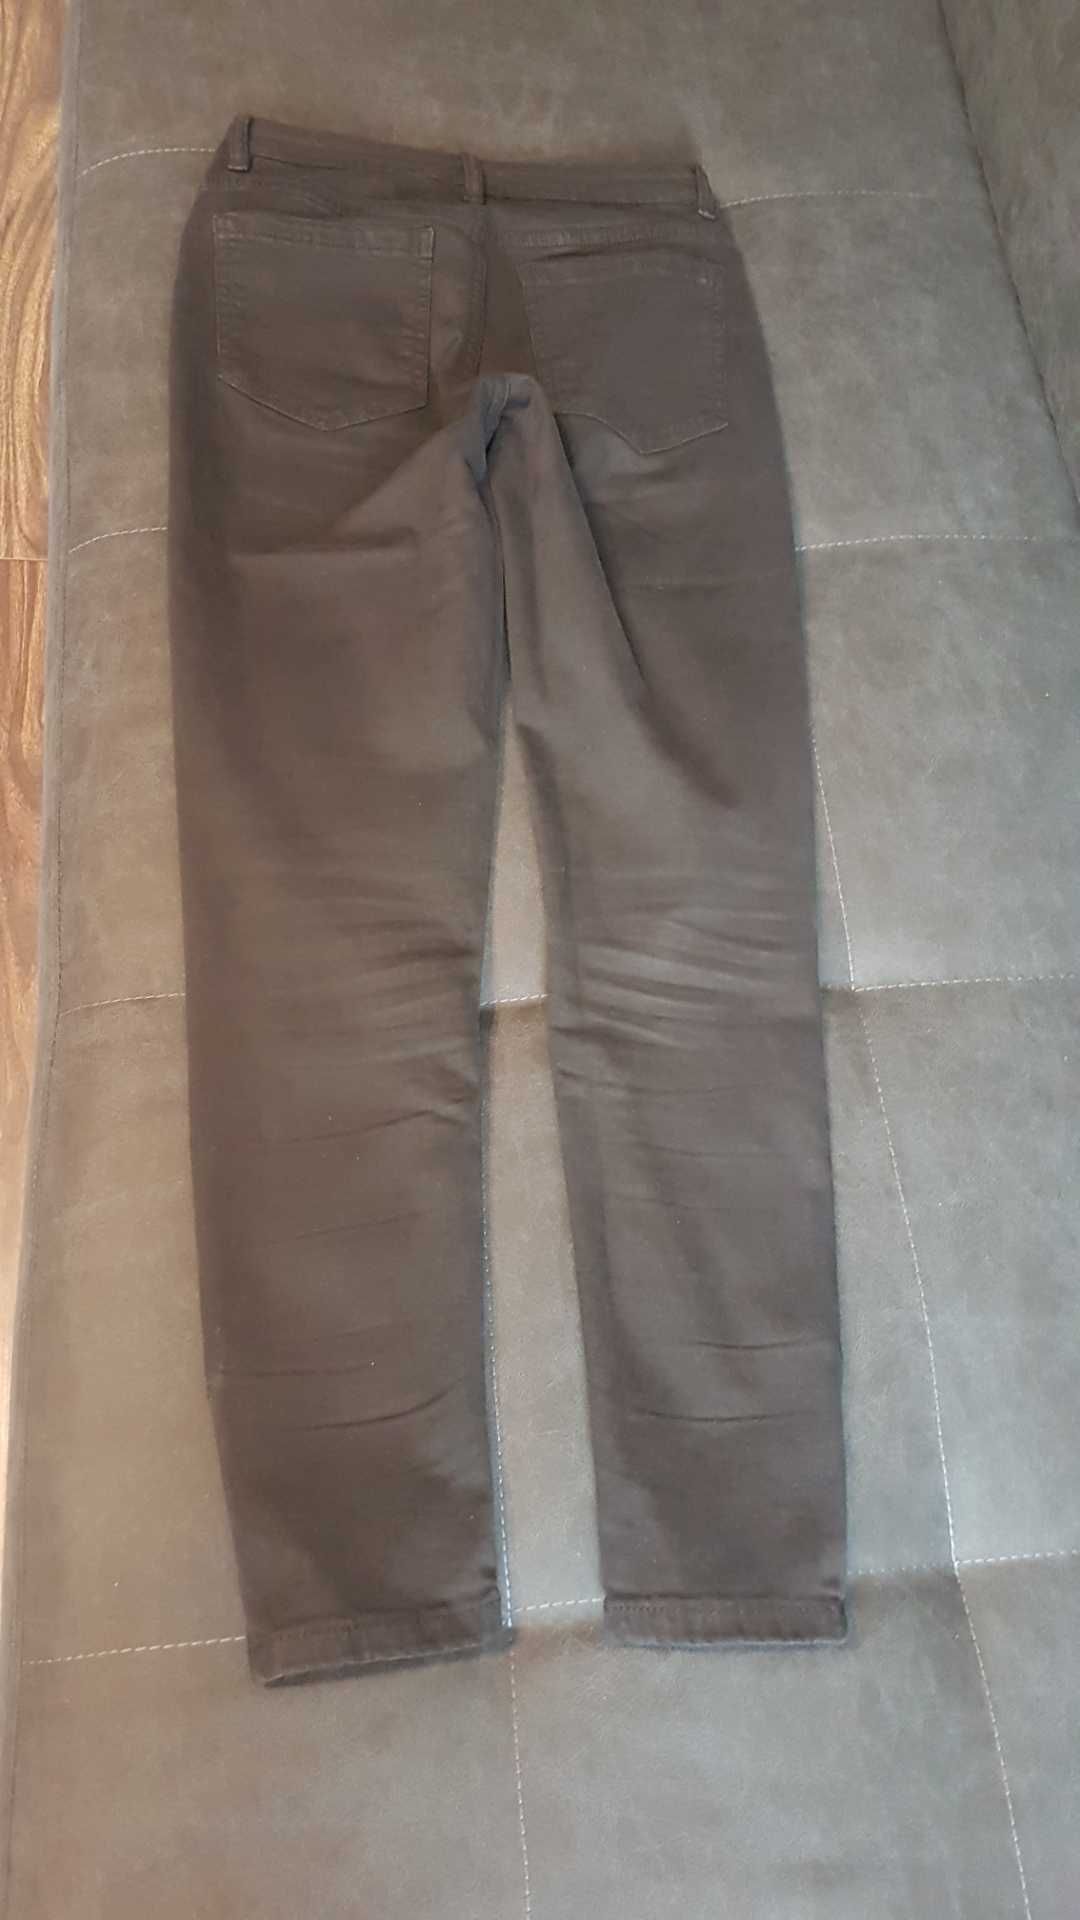 Młodzieżowe spodnie/dżinsy, firma sinsay,rozmiar 32